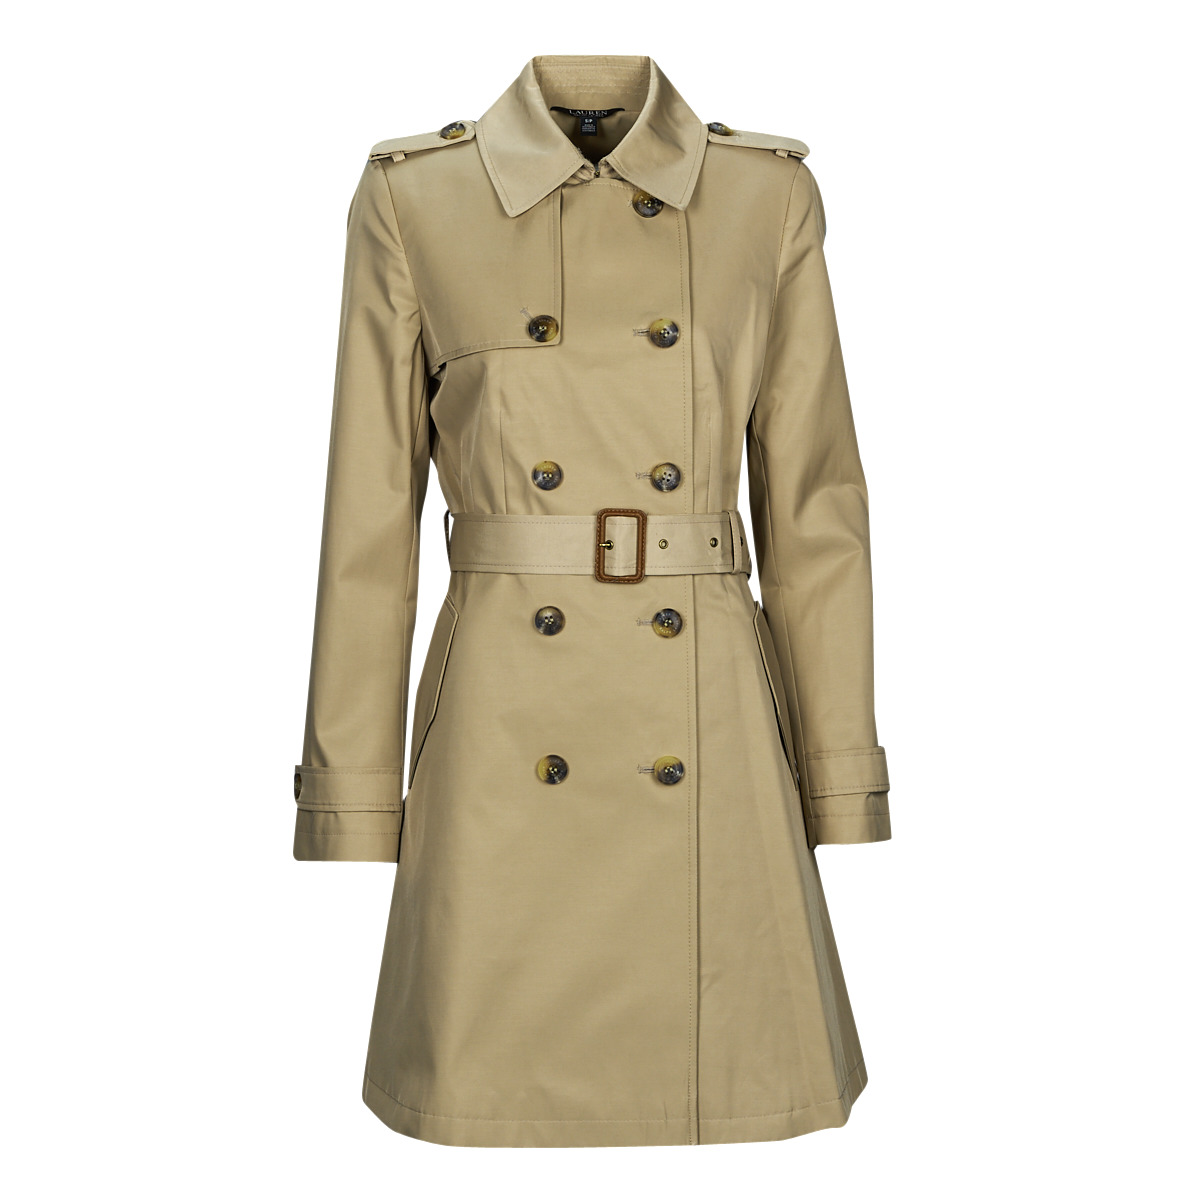 Lauren Ralph Lauren CTTN NET ! Trench | DB coats - Beige Women COAT delivery Free TNCH - Spartoo LINED Clothing